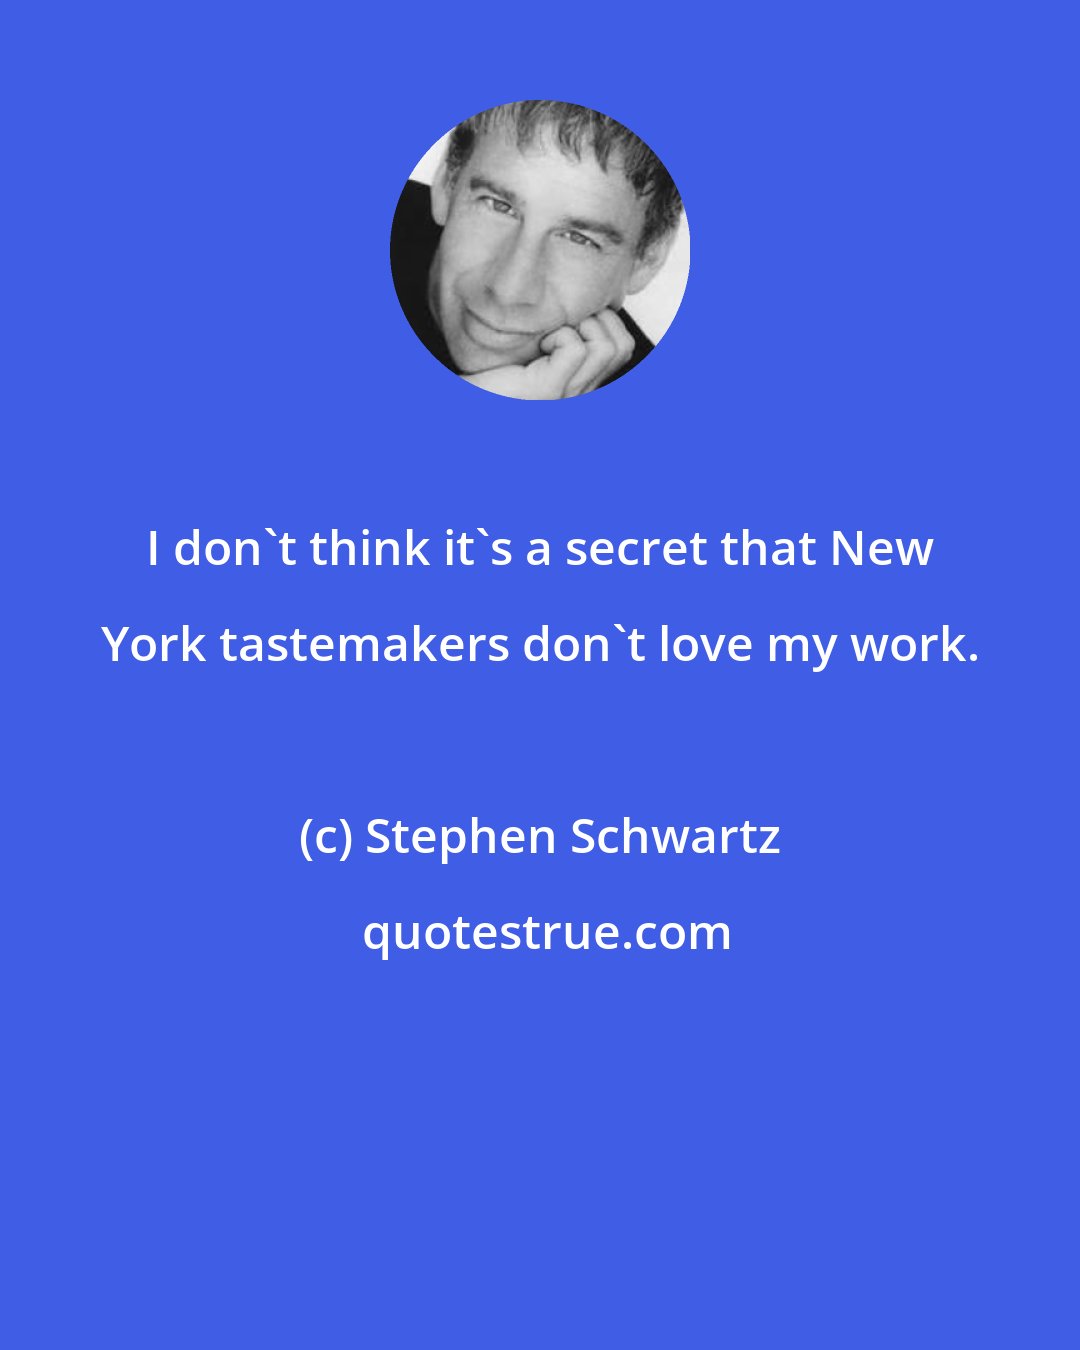 Stephen Schwartz: I don't think it's a secret that New York tastemakers don't love my work.